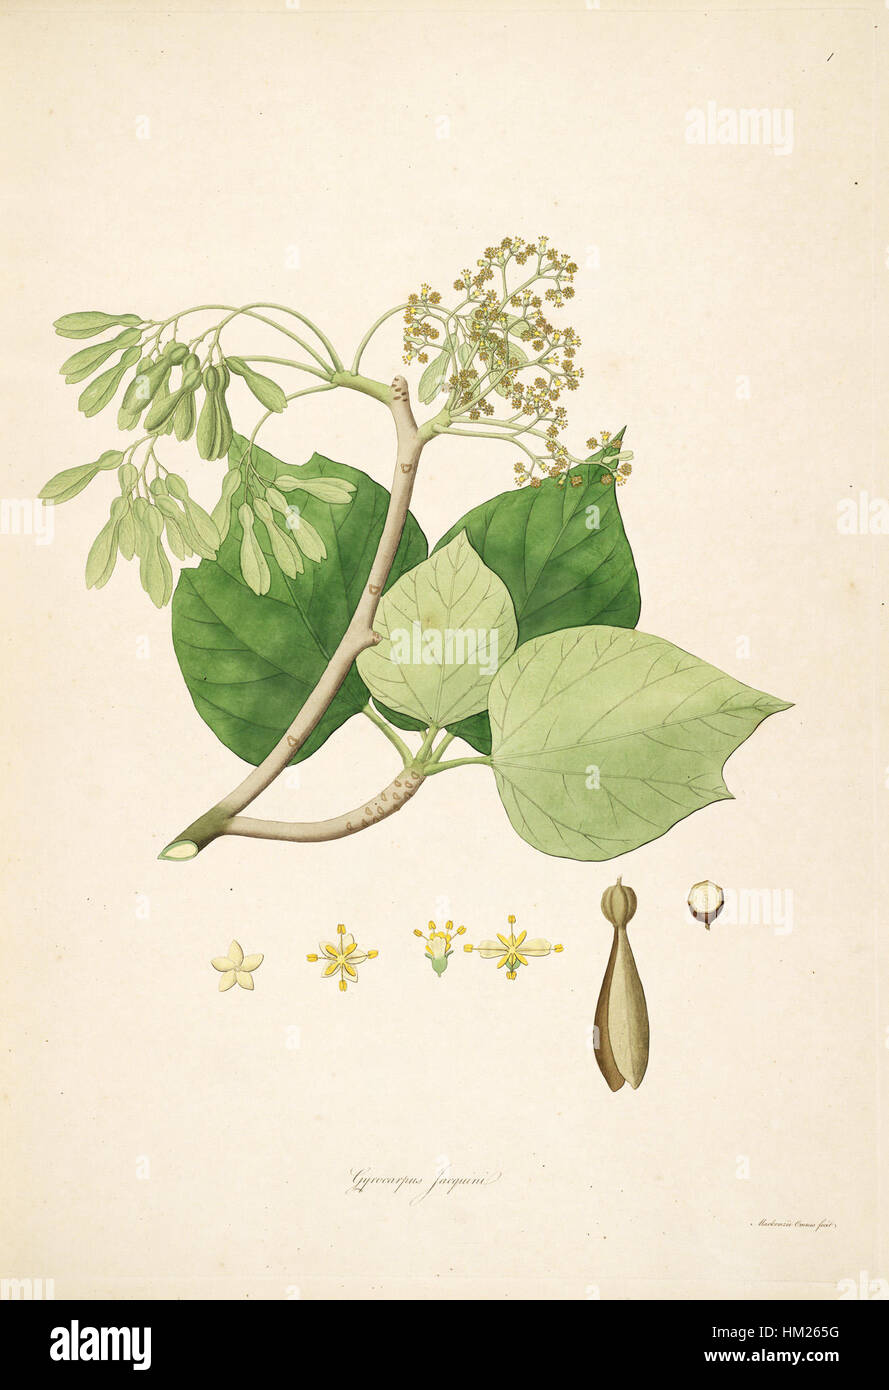 Gyrocarpus jacquinii Stock Photo